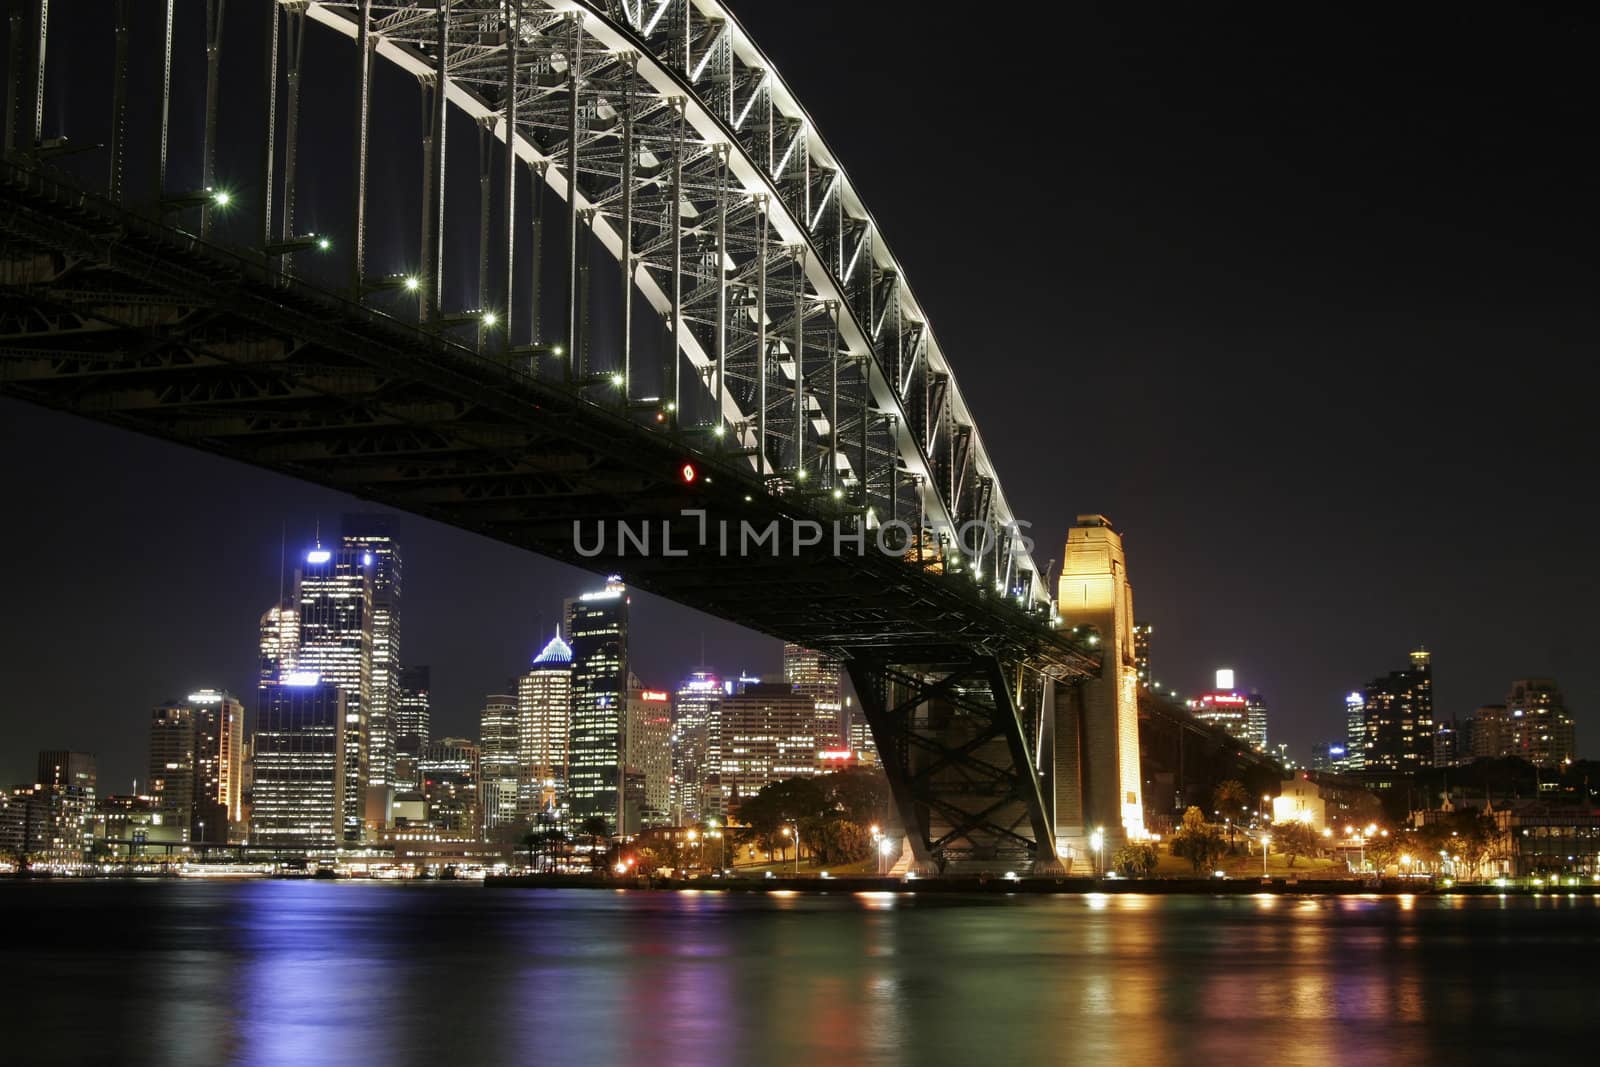 Sydney Harbour Bridge At Night, Australia